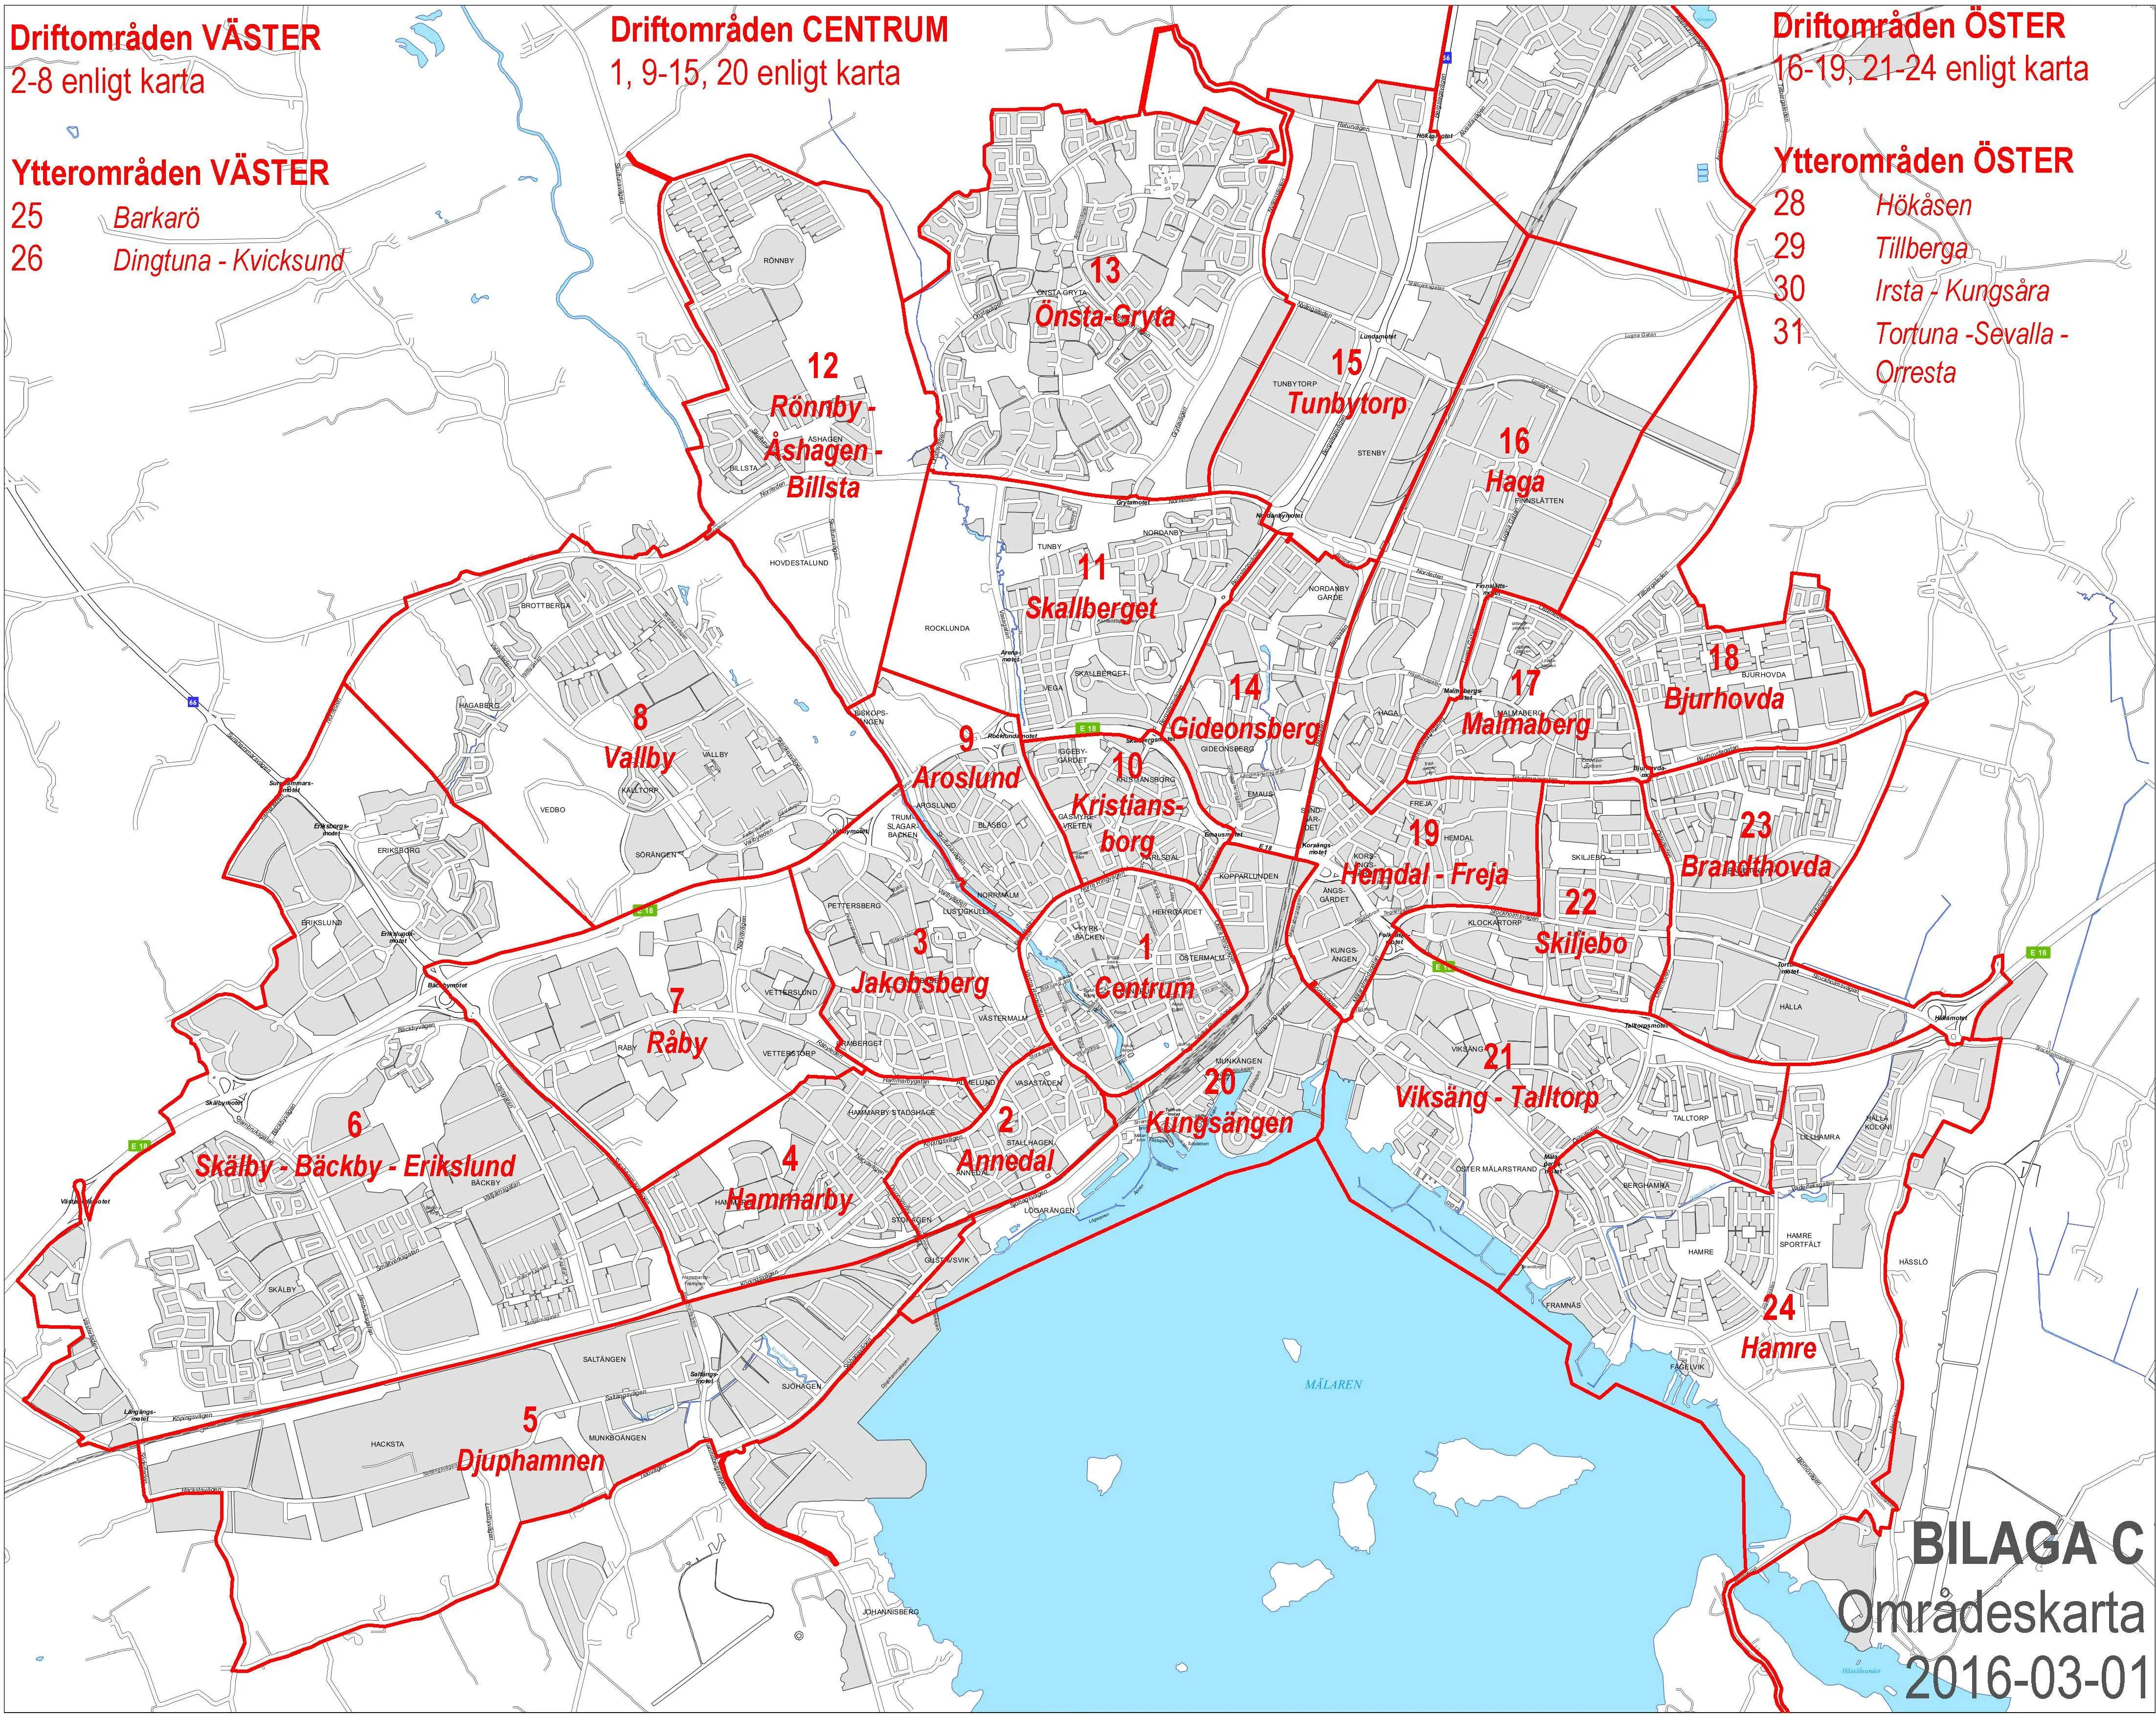 Karta över Västerås som visar indelningen i olika områden